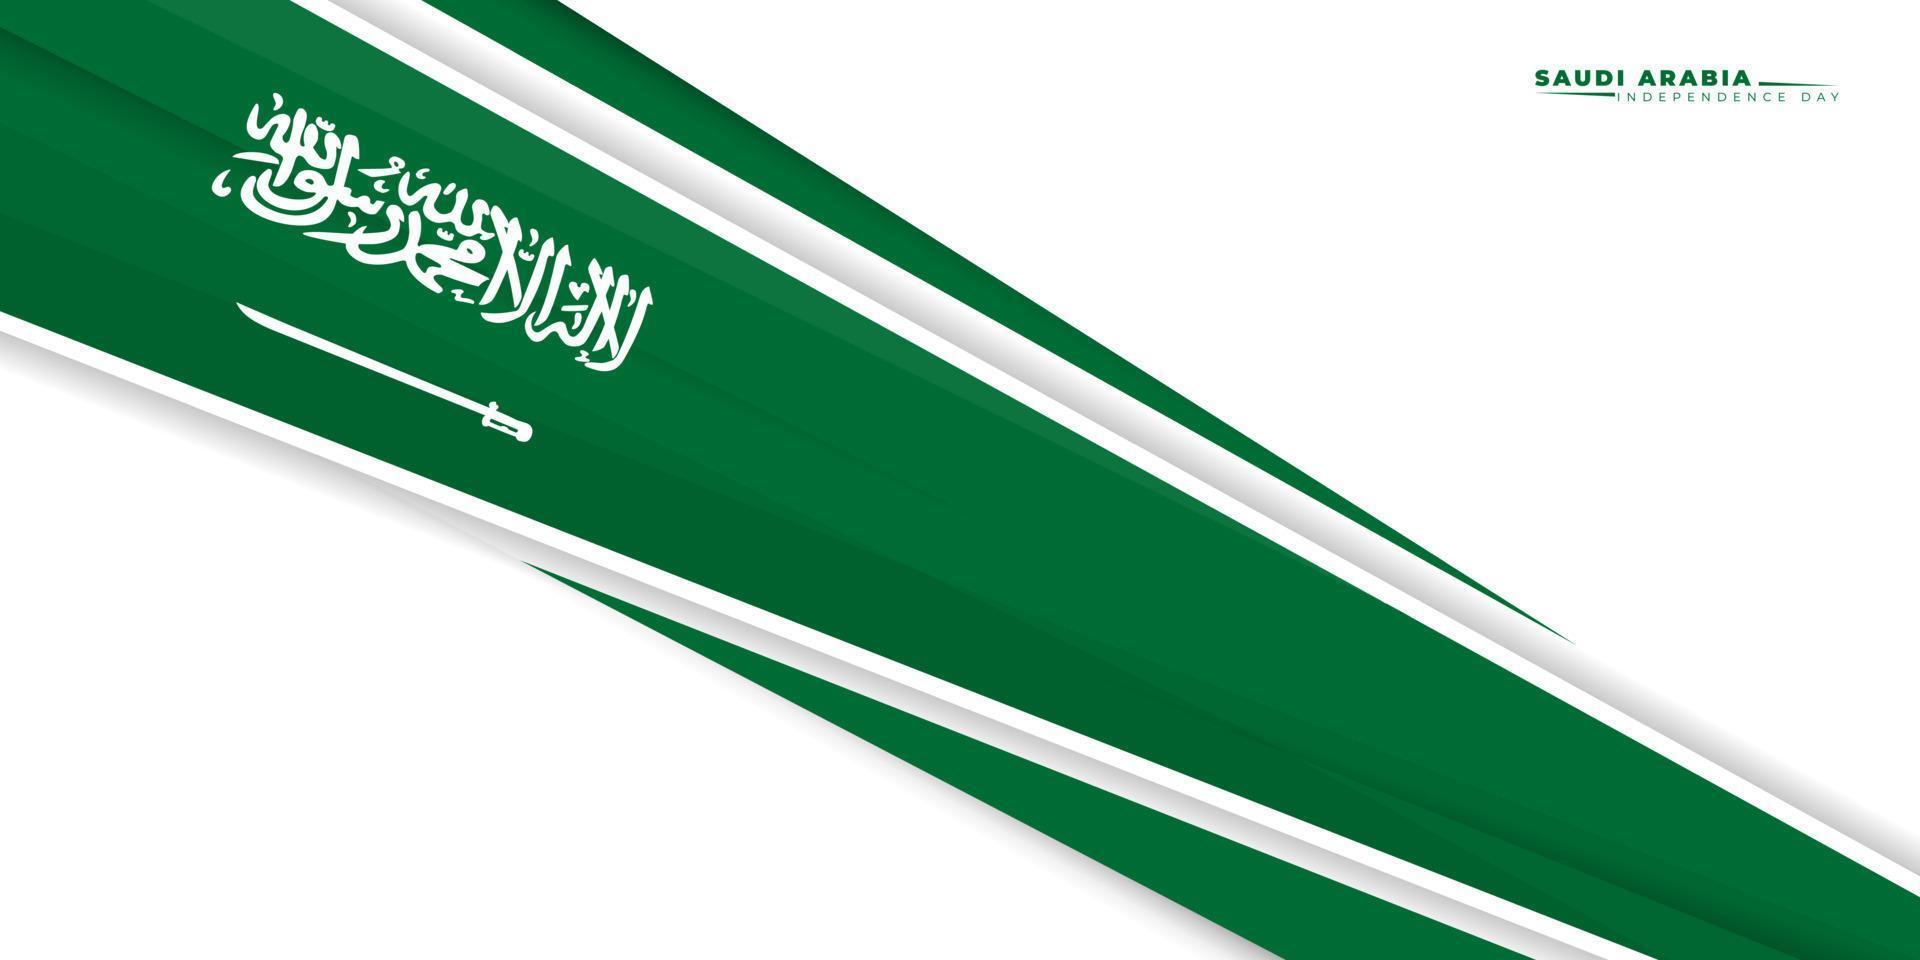 schwarzes grünes geometrisches hintergrunddesign mit saudi-arabien-flagge. Unabhängigkeitstag Saudi-Arabiens. gute Vorlage für den Unabhängigkeitstag Saudi-Arabiens oder das Design des Nationaltags vektor